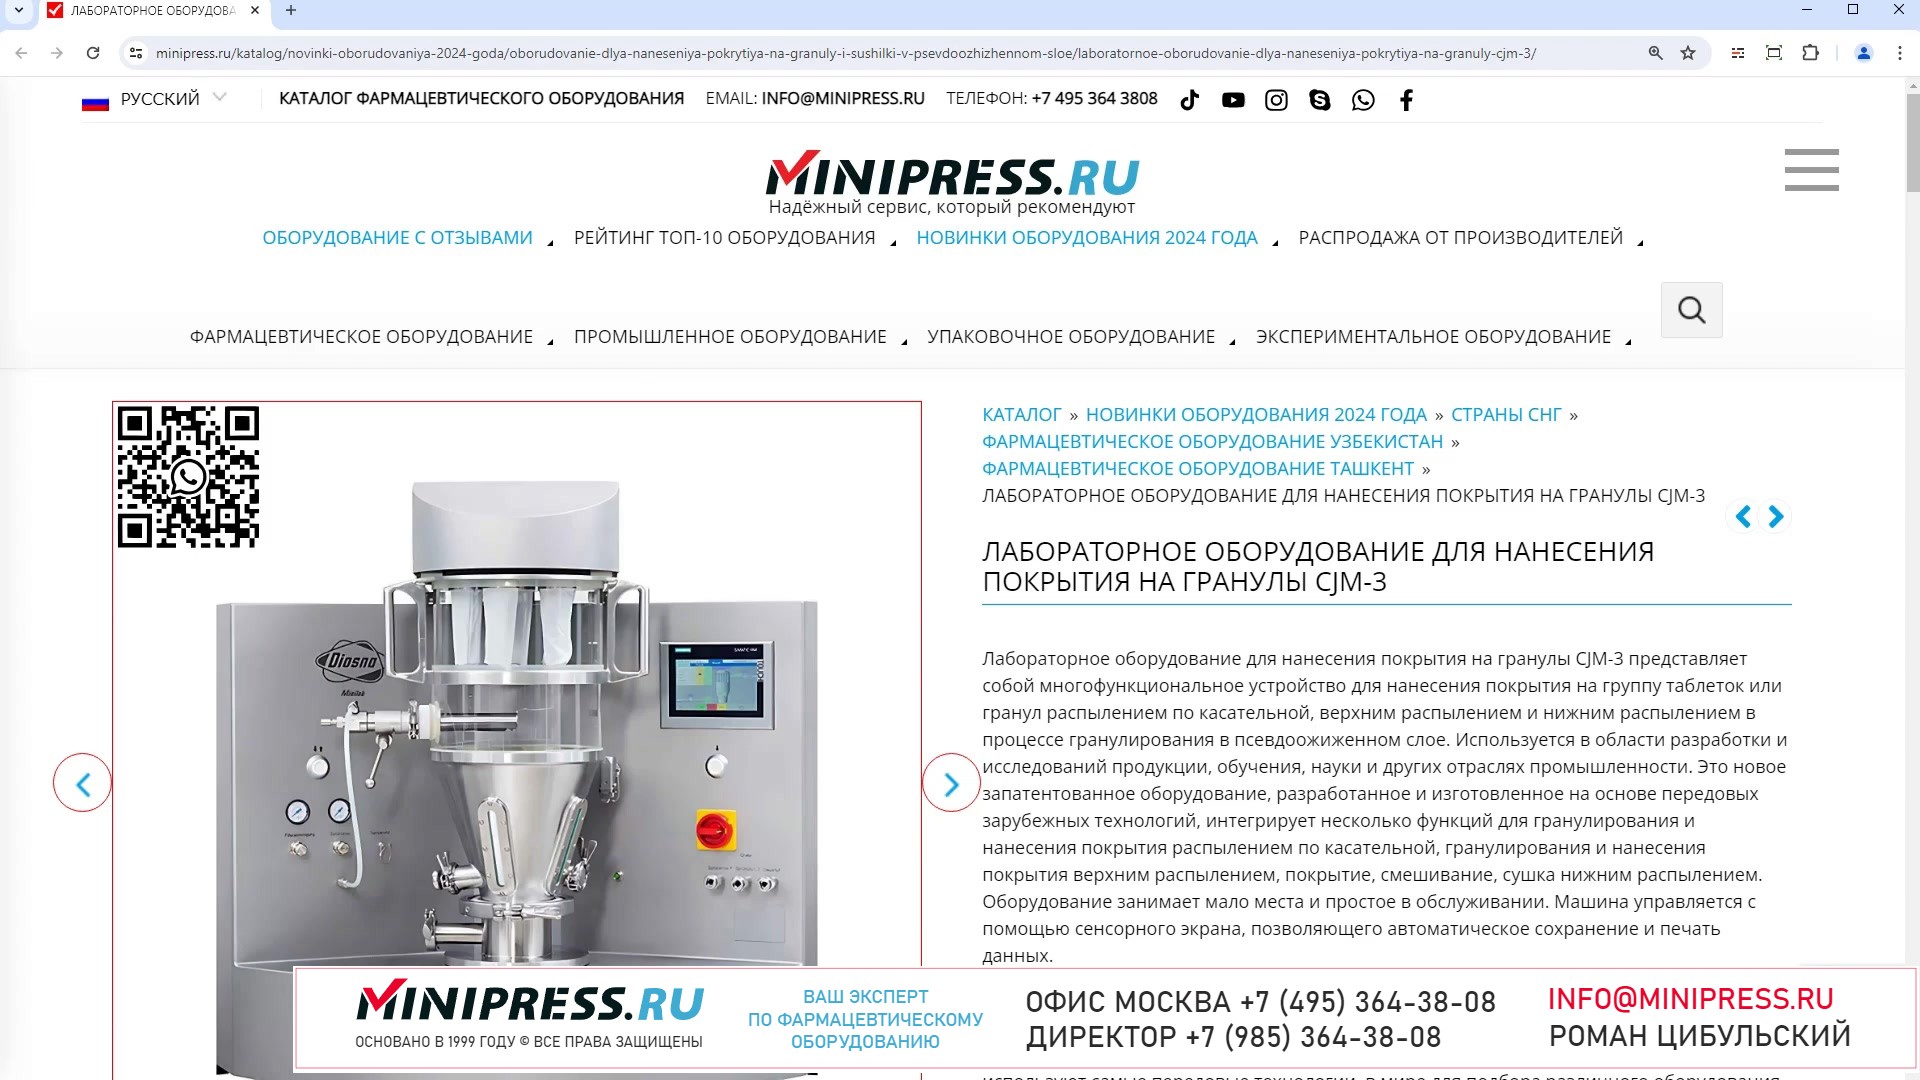 Minipress.ru Лабораторное оборудование для нанесения покрытия на гранулы CJM-3